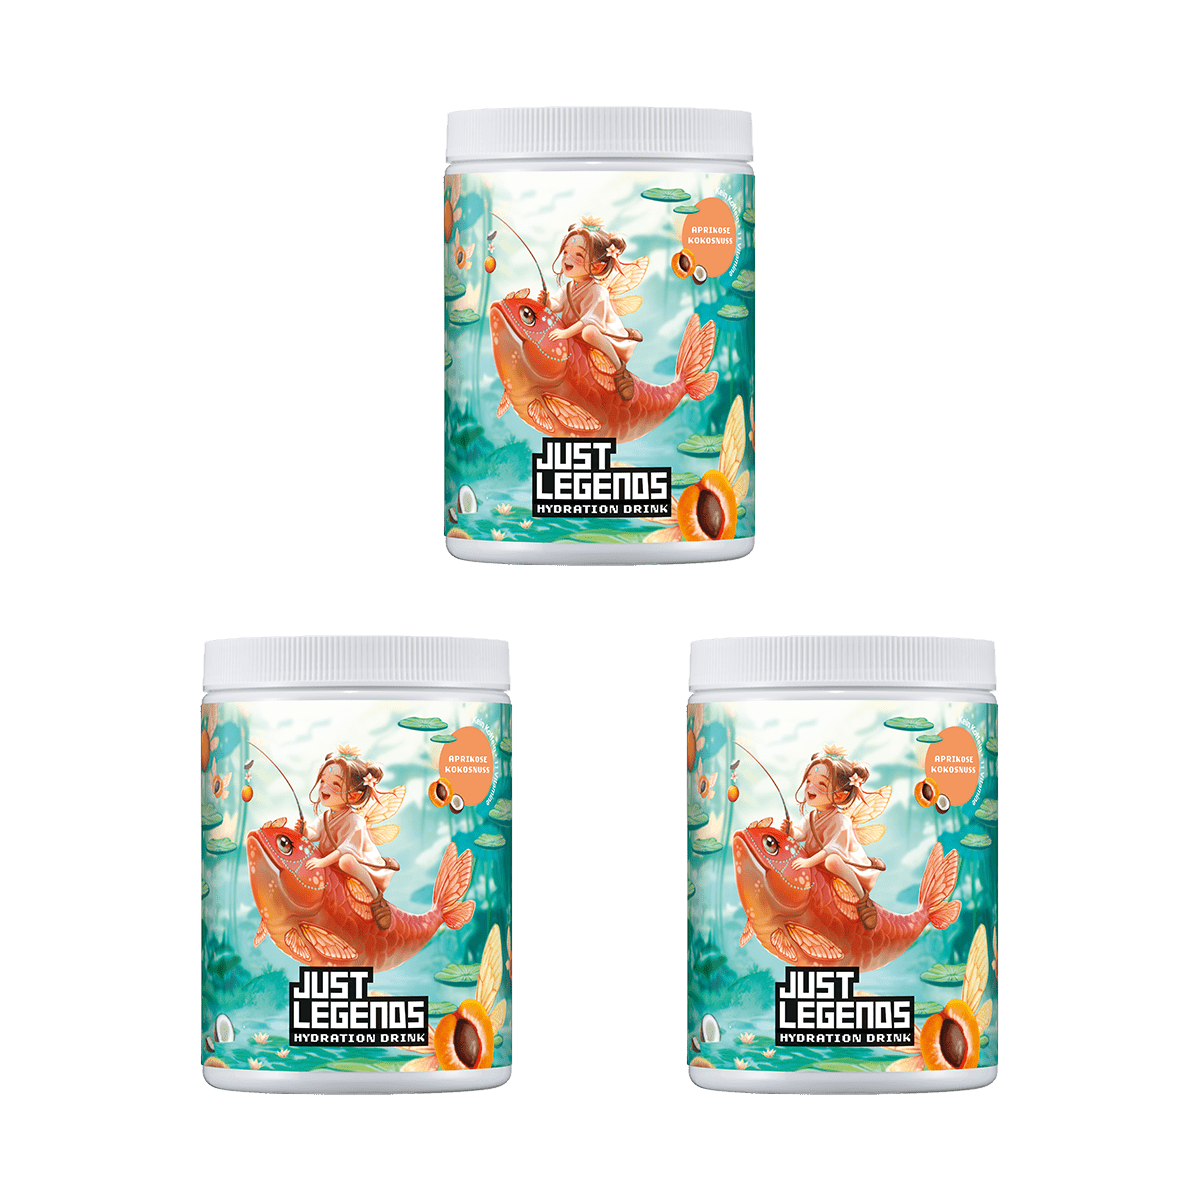 Just Legends Hydration Triple Pack | Funktionaler, veganer Multipack auf Pulverbasis ohne Zucker, mit wenig Kalorien, vielen Vitaminen und natürlichen Aromen.